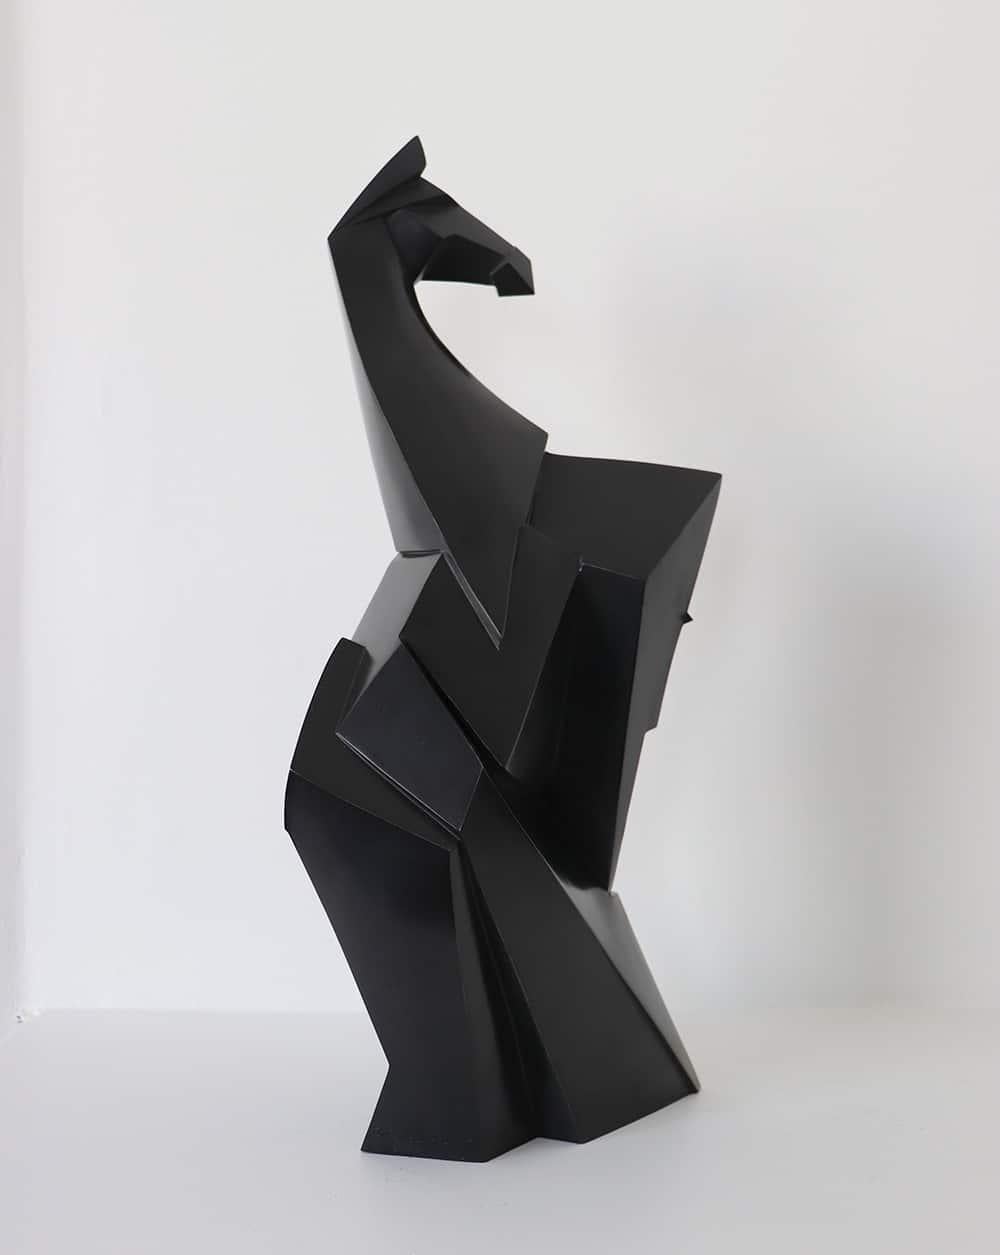 Kionero est une sculpture en bronze de l'artiste contemporain Jacques Owczarek, dont les dimensions sont de 48 × 28 × 16,5 cm (18,9 × 11 × 6,5 in). 
La sculpture est signée et numérotée, elle fait partie d'une édition limitée à 8 exemplaires + 4